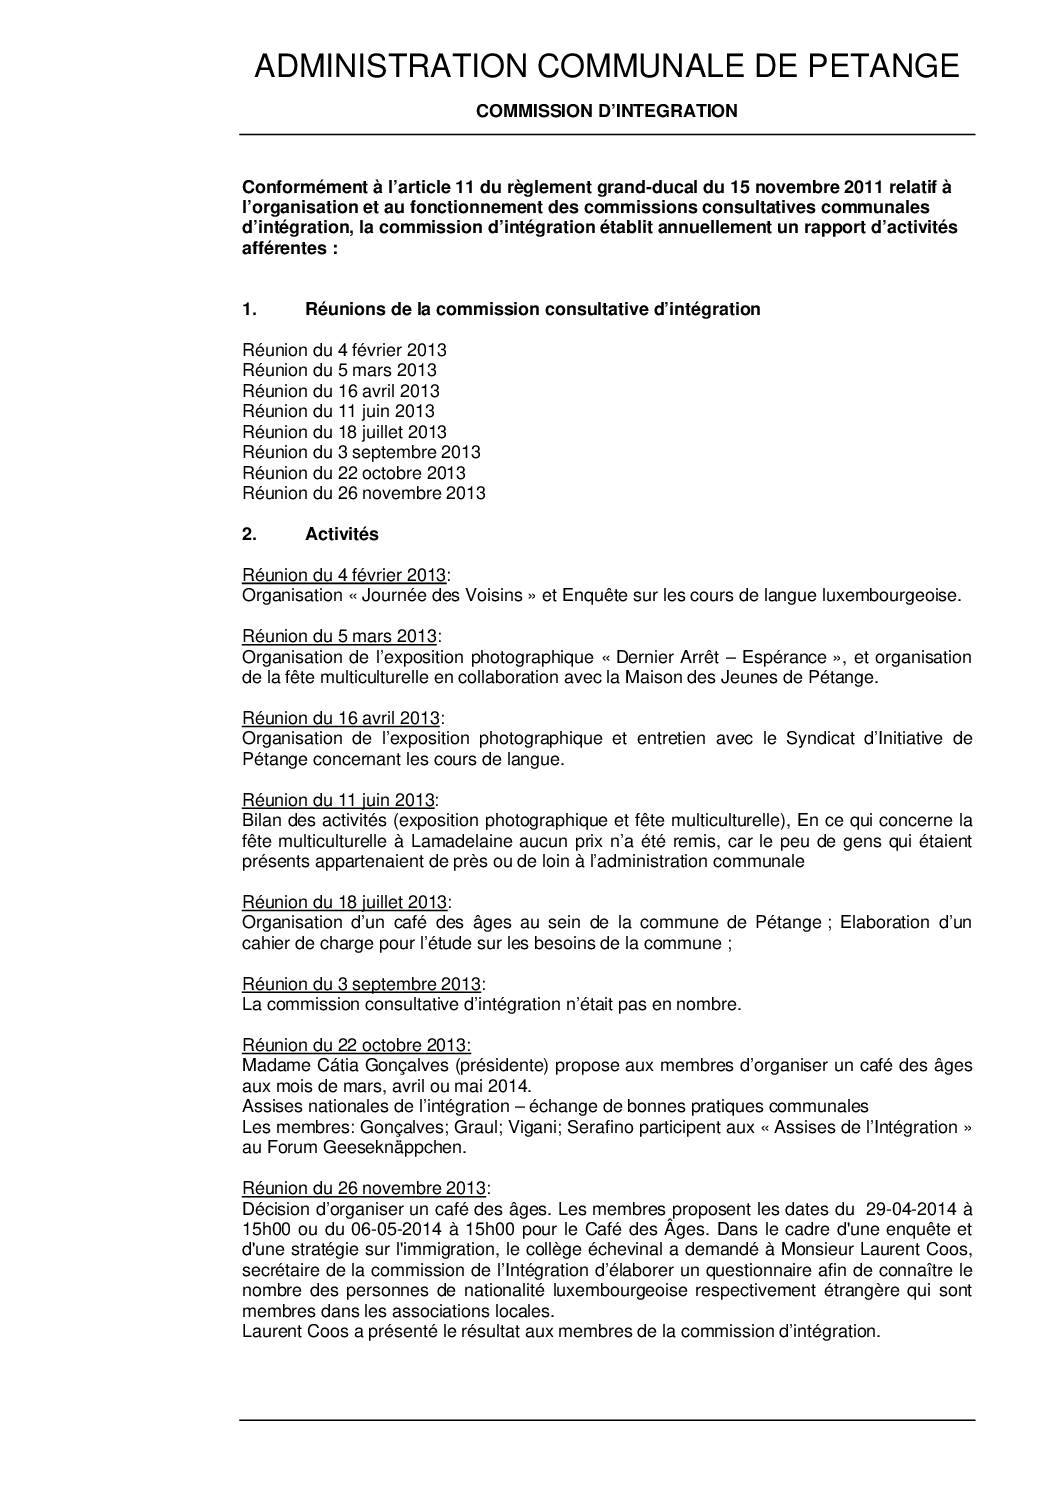 Commission d'intégration de la commune de Pétange - Rapport annuel 2013